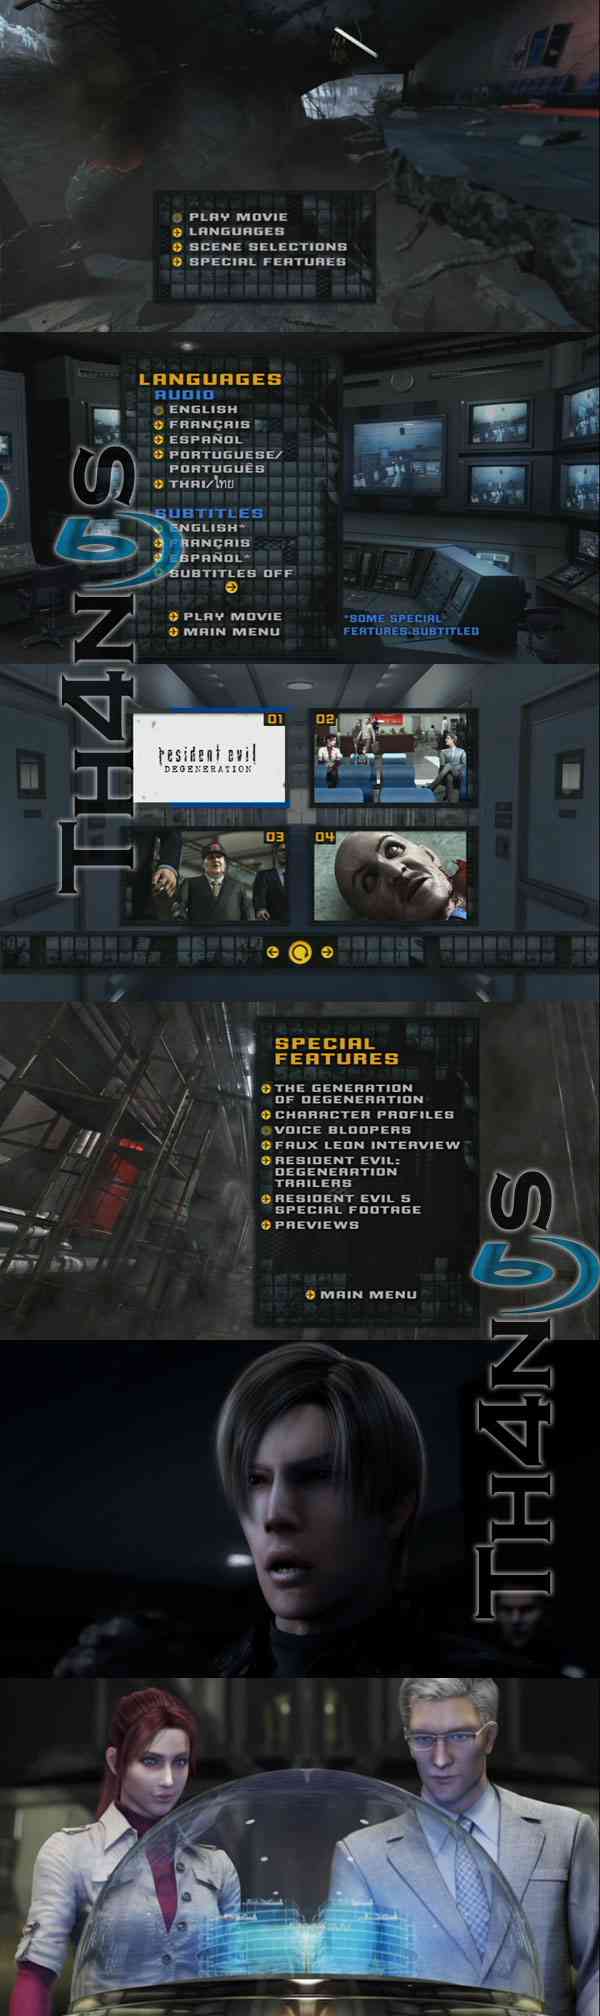 "Residen Evil Degeneration DVD"